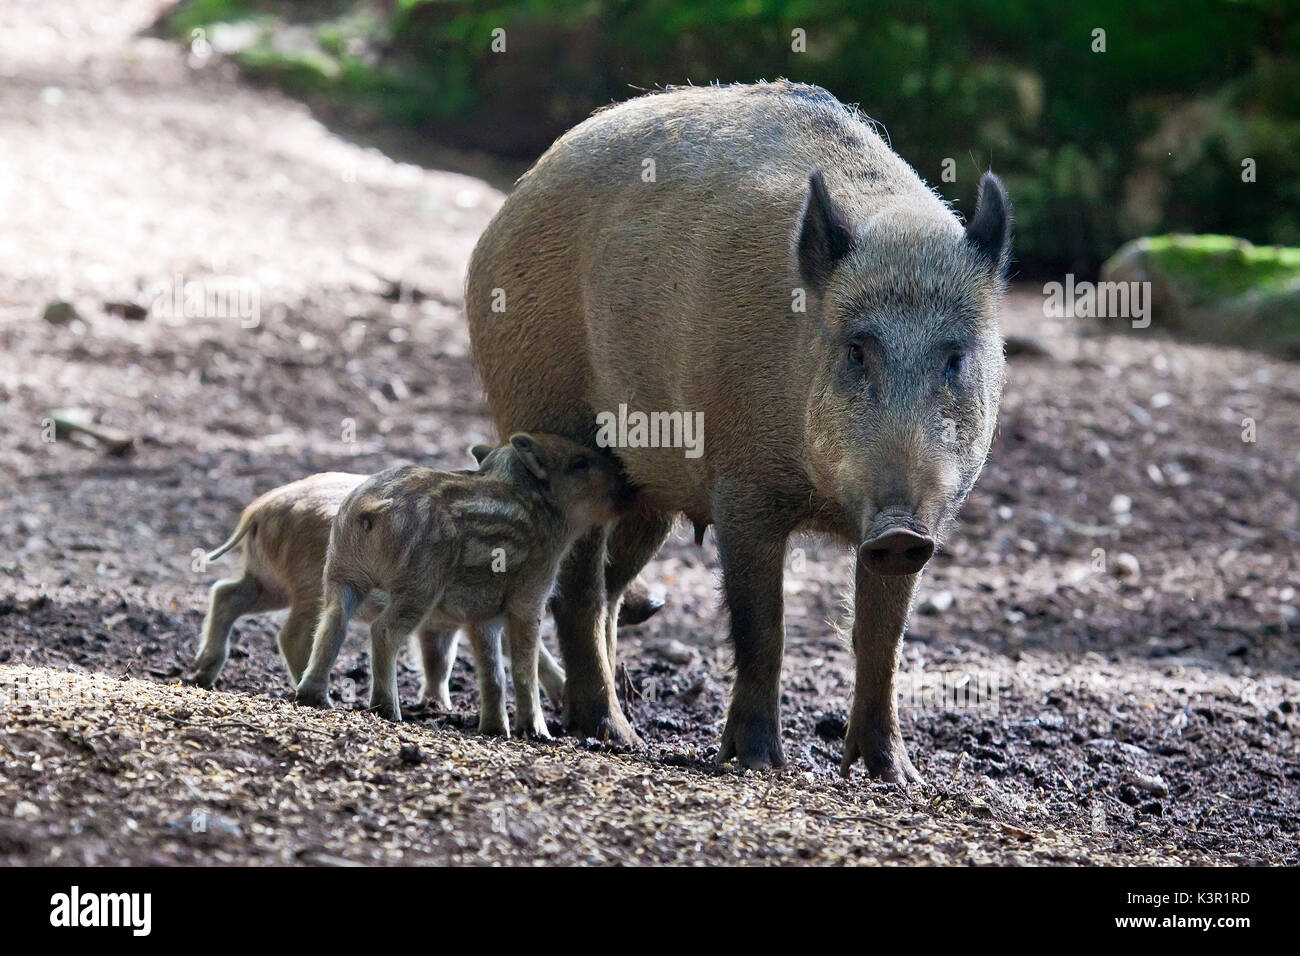 La Unión jabalí (Sus scrofa), desde la familia bof los cerdos, vive en los bosques de los Alpes, incluso si se puede adaptar a todo tipo de hábitat. En esta imagen, la madre es la alimentación de los cachorros en el Bosque de Baviera ( Bayerischewald) Europa Alemania Foto de stock